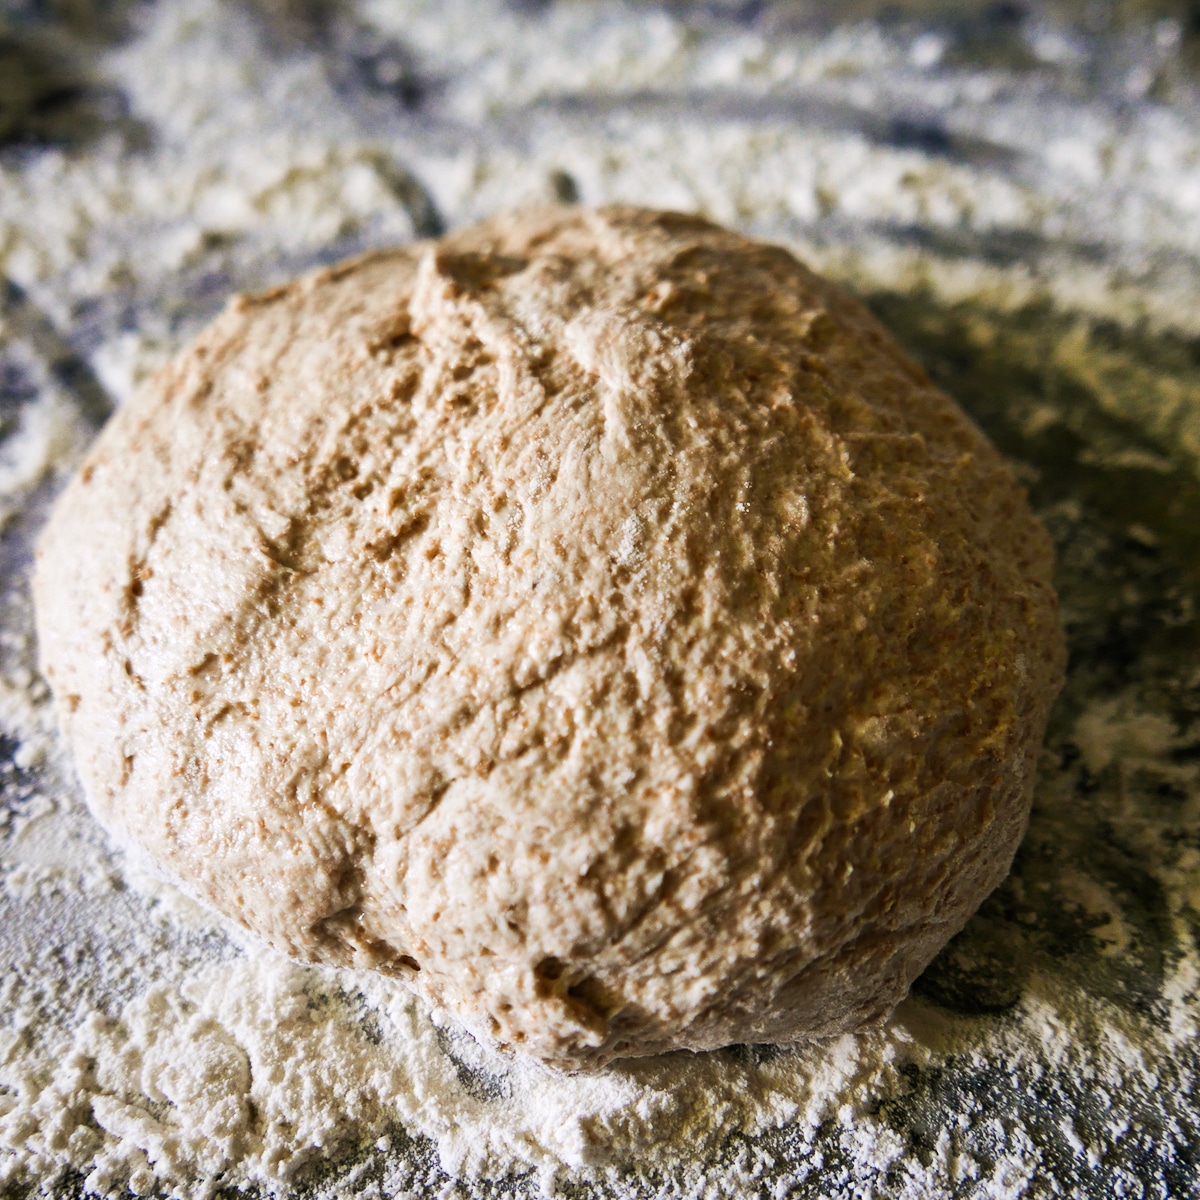 Kneaded dough on a floured surface.